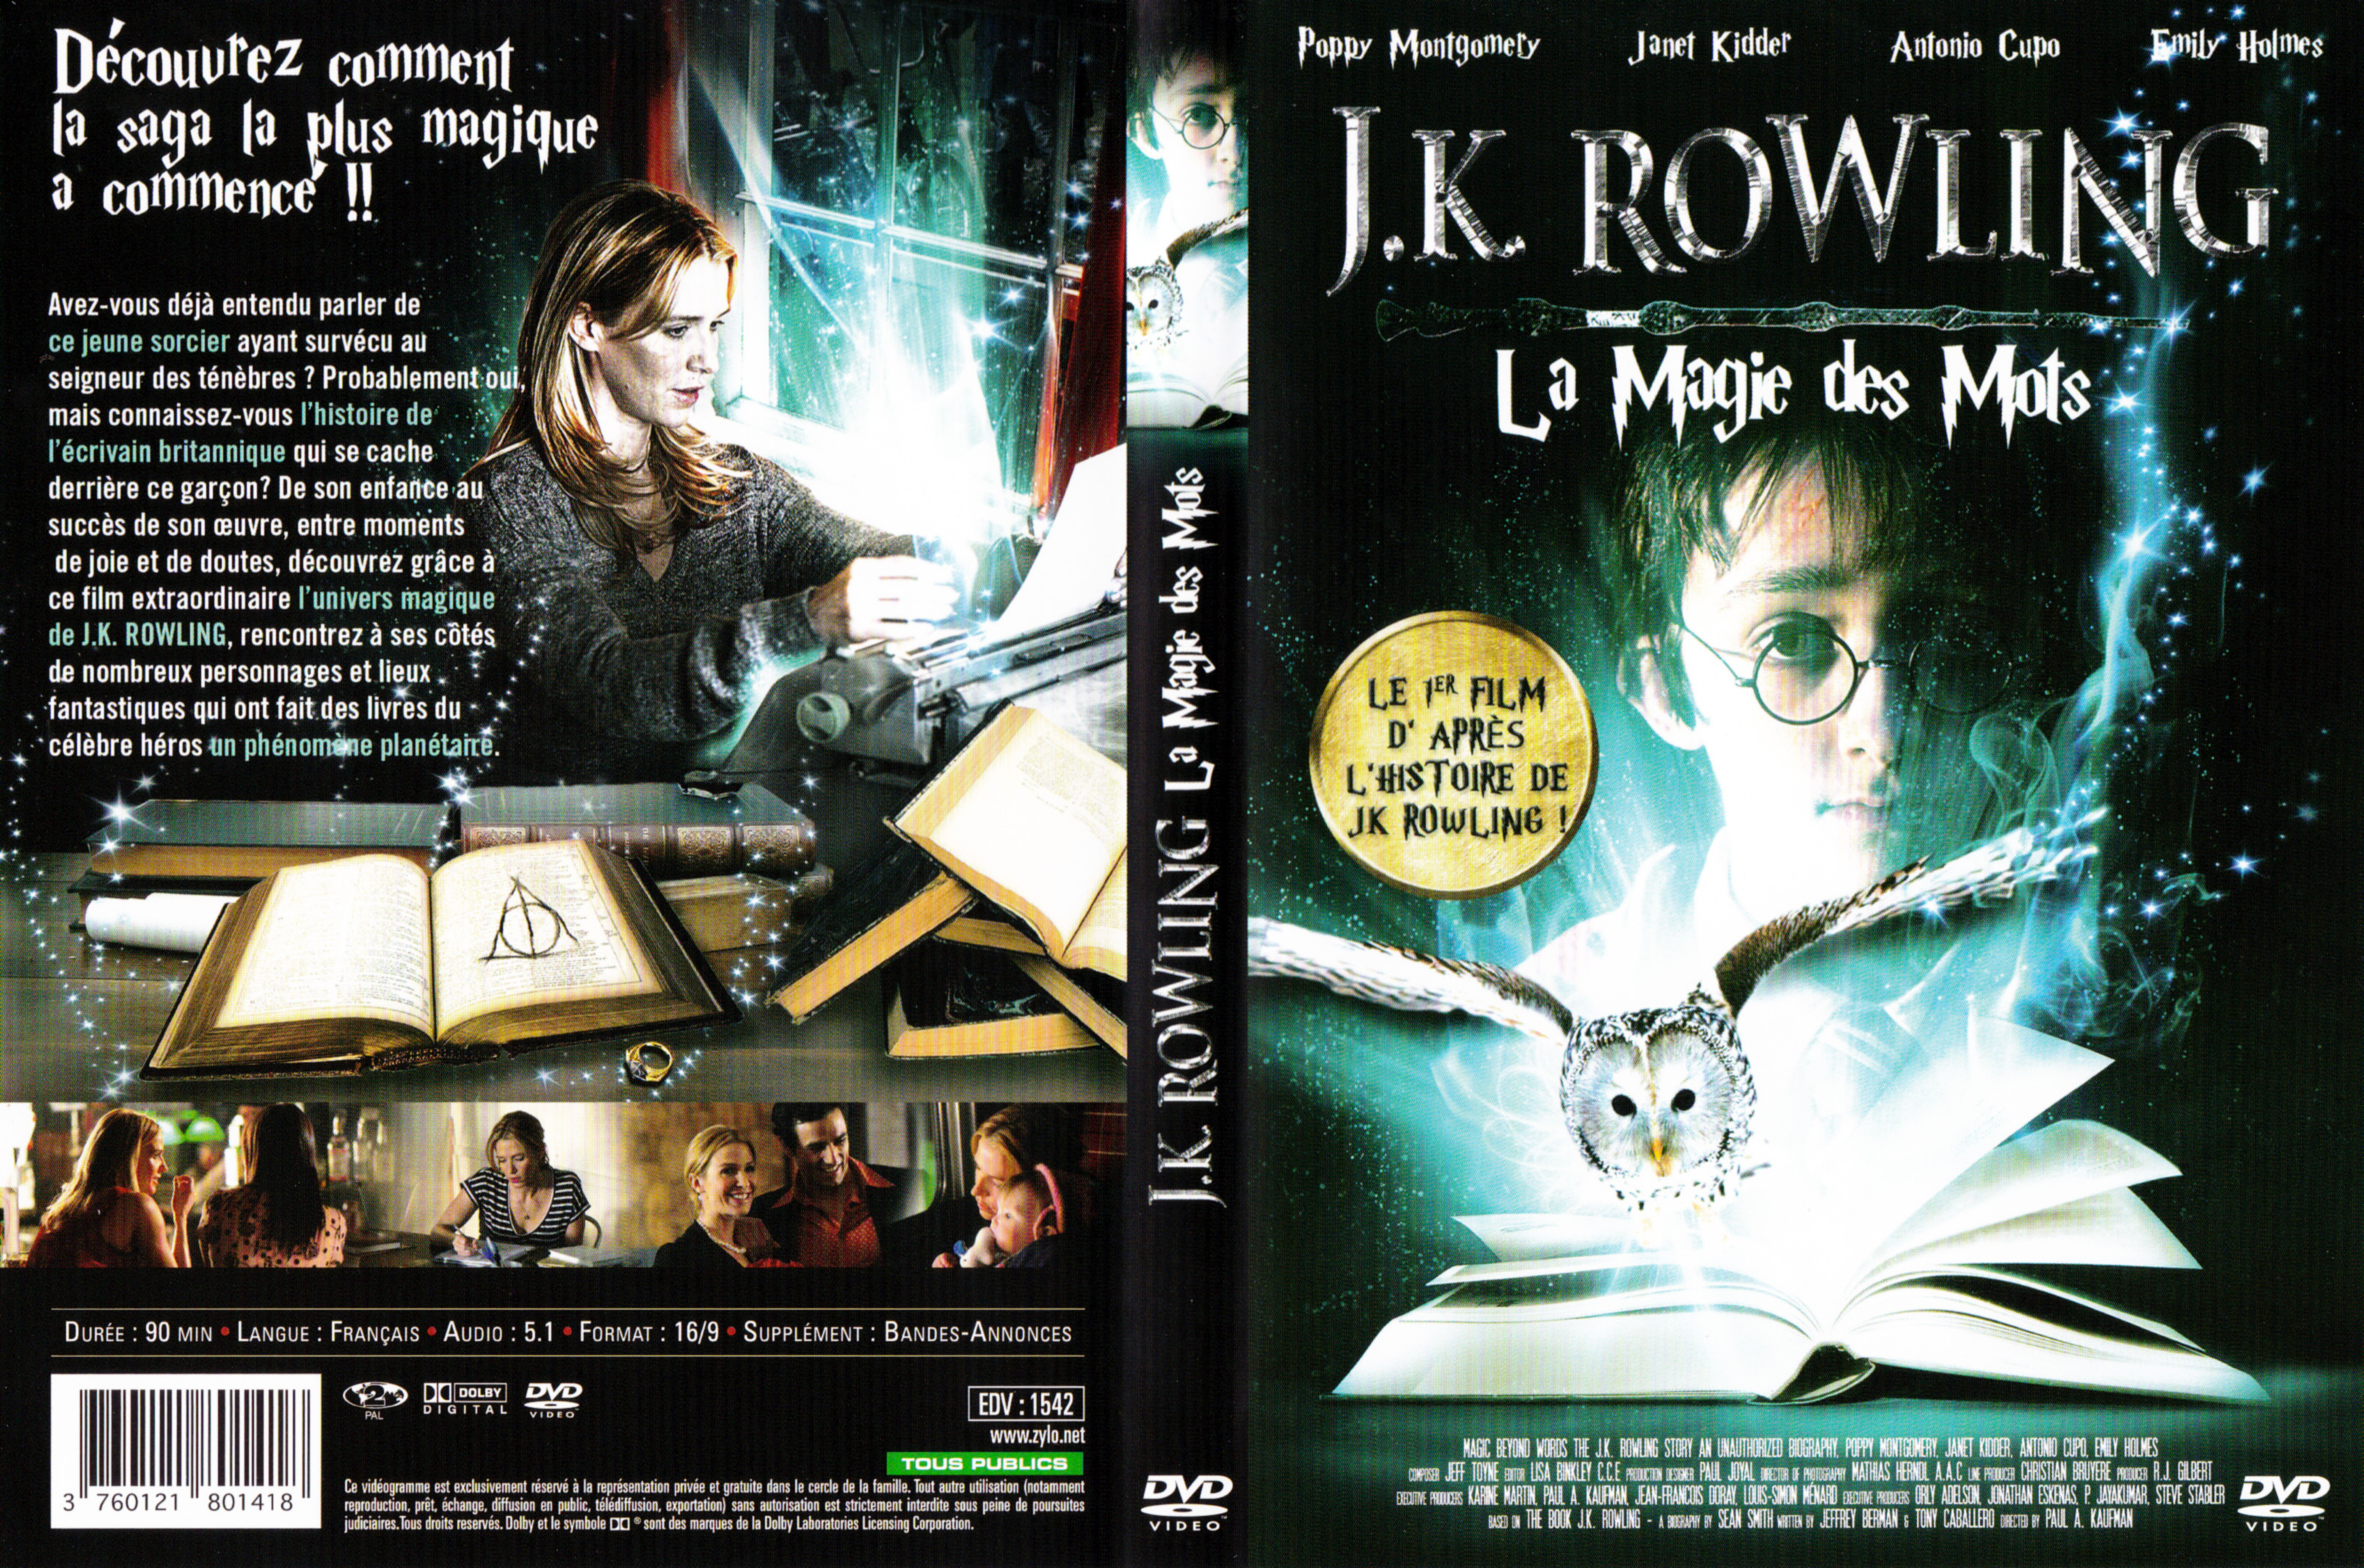 Jaquette DVD JK Rowling la magie des mots